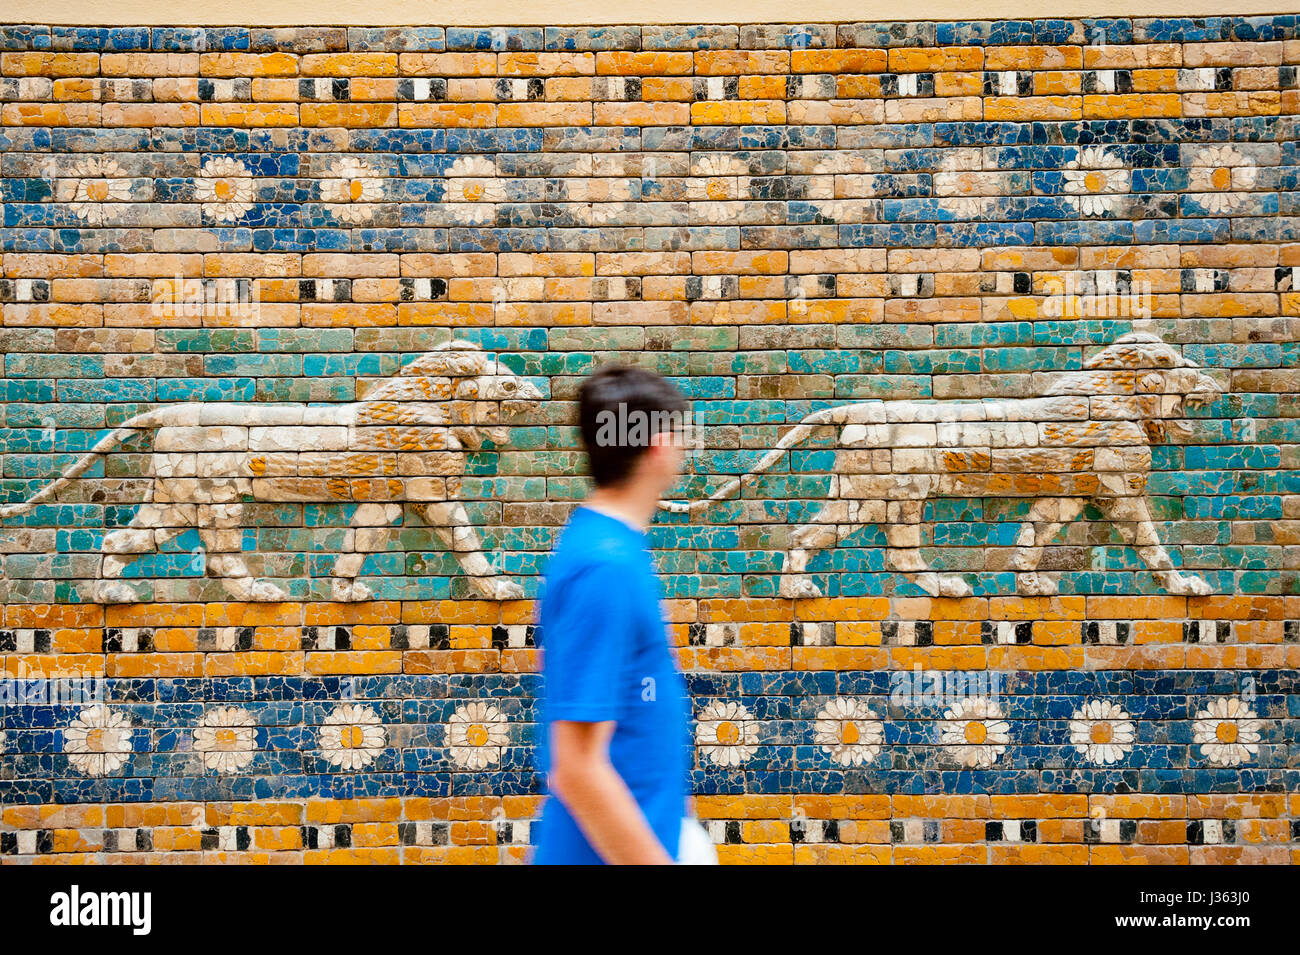 Les carreaux en céramique montrant les lions sur voie processionnelle à Ishtar Gate de Musée de Pergame, Museumsinsel, Berlin, Allemagne Banque D'Images